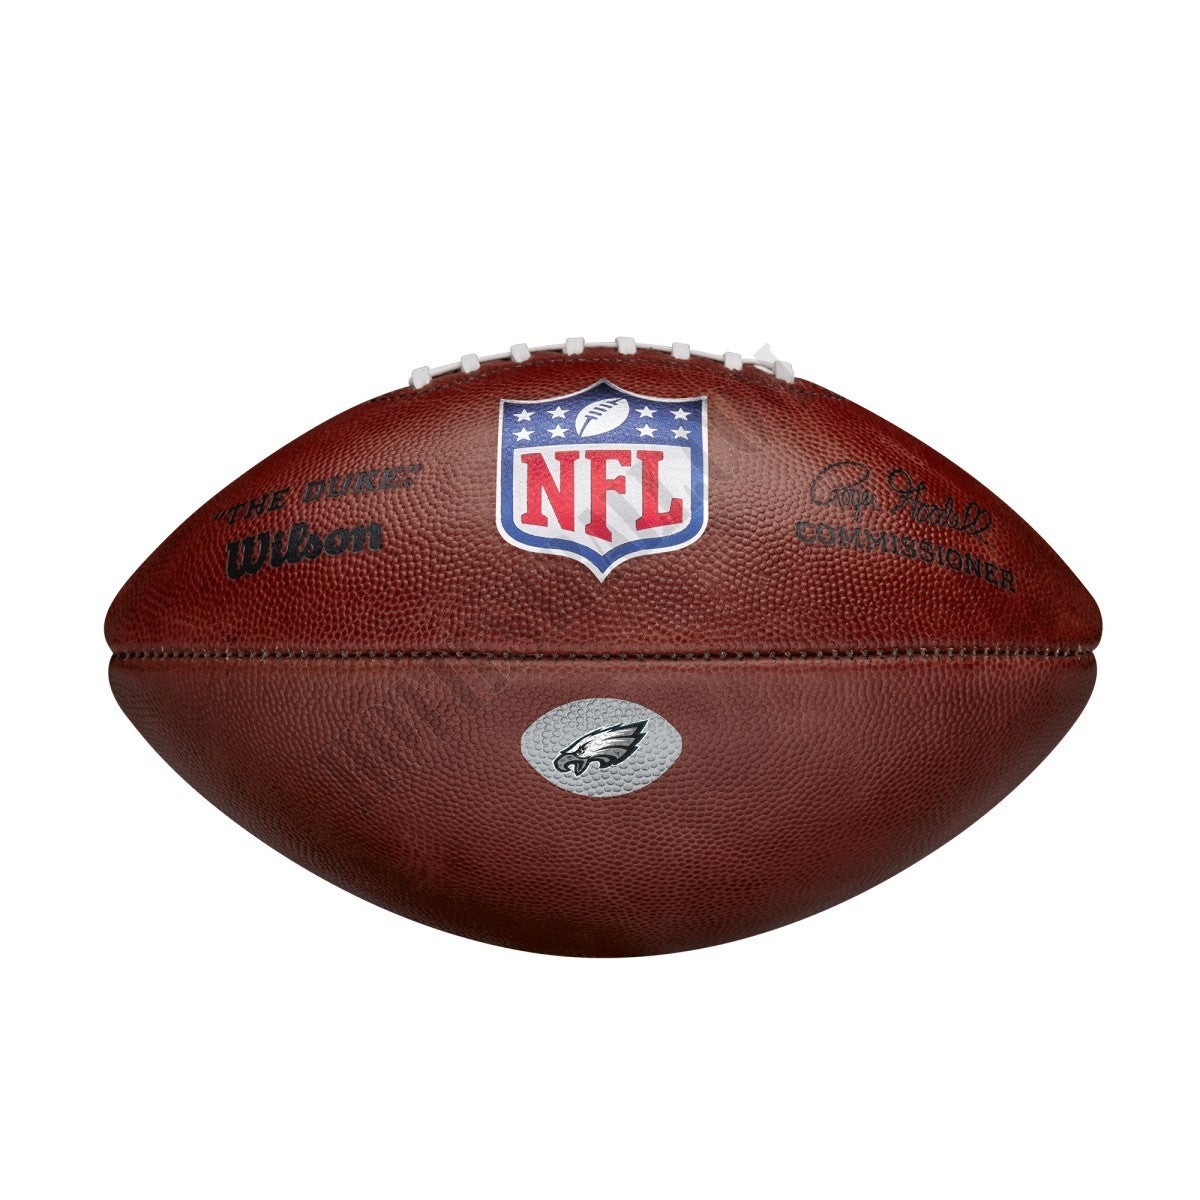 The Duke Decal NFL Football - Philadelphia Eagles ● Wilson Promotions - The Duke Decal NFL Football - Philadelphia Eagles ● Wilson Promotions